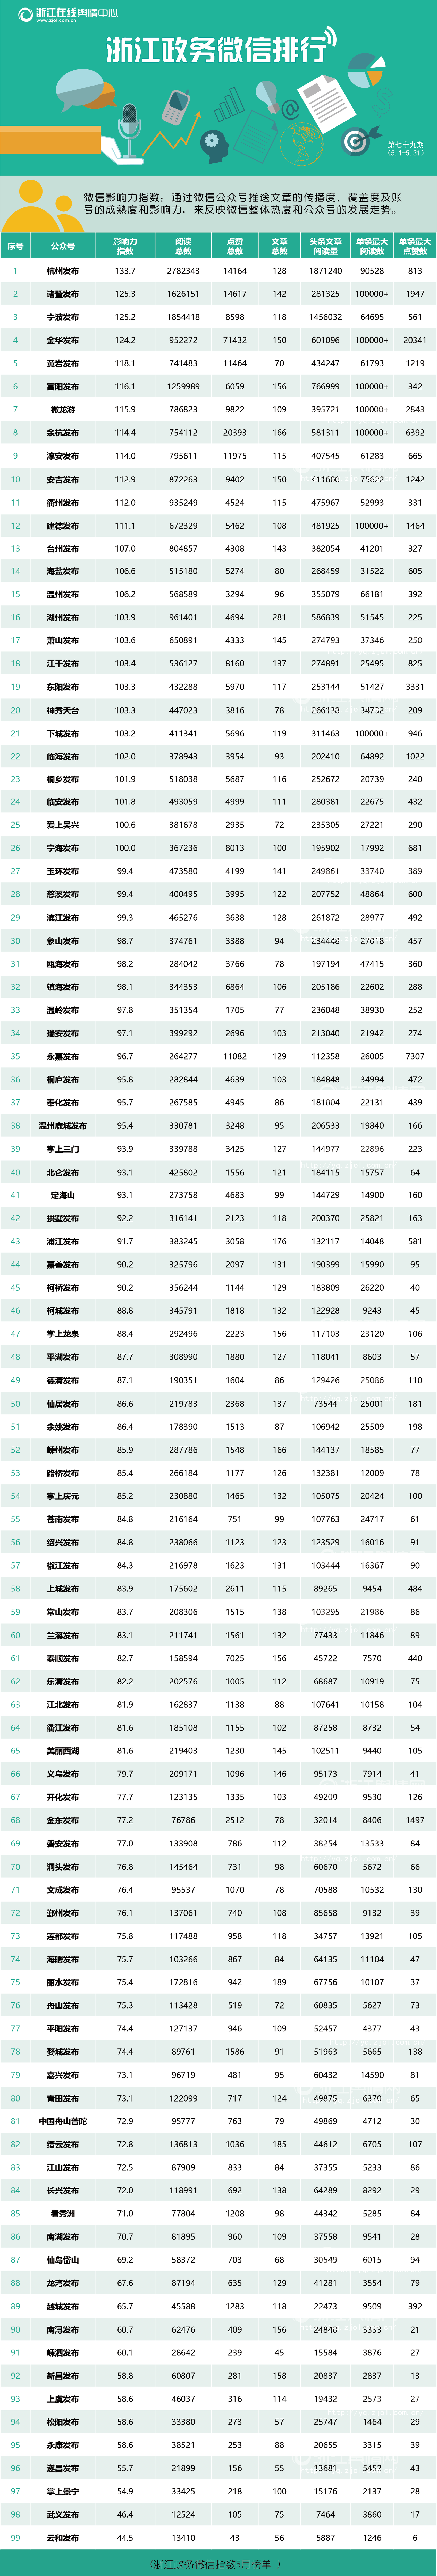 微信排行榜第79期（5月1日-5月31日）-榜单-01.png